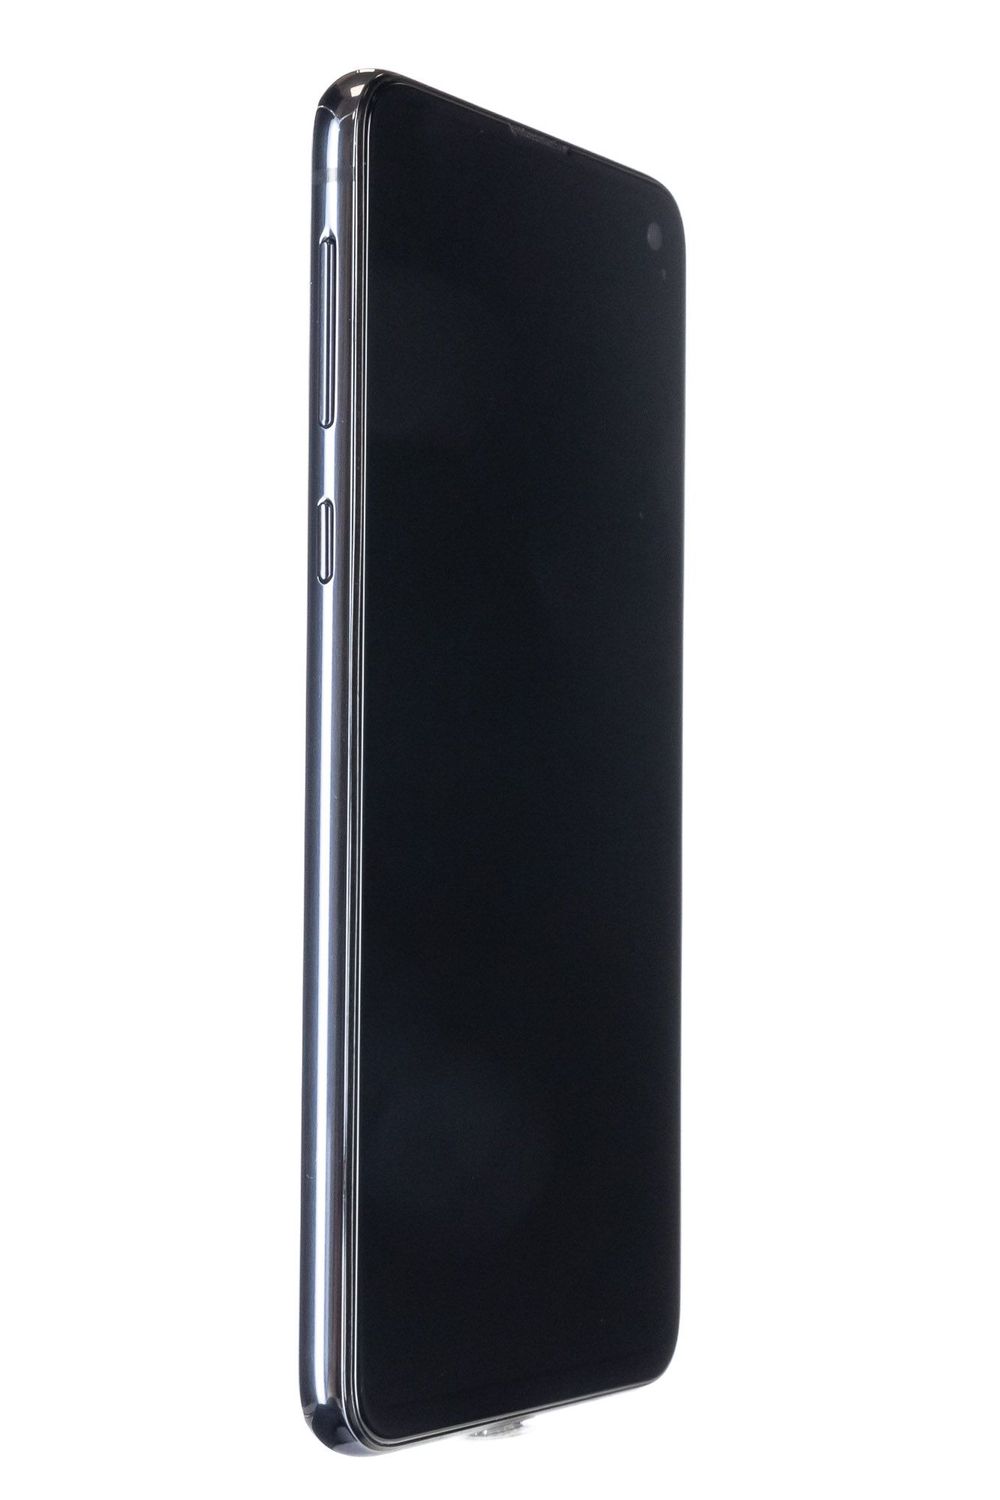 Mobiltelefon Samsung Galaxy S10 e Dual Sim, Prism Black, 256 GB, Excelent